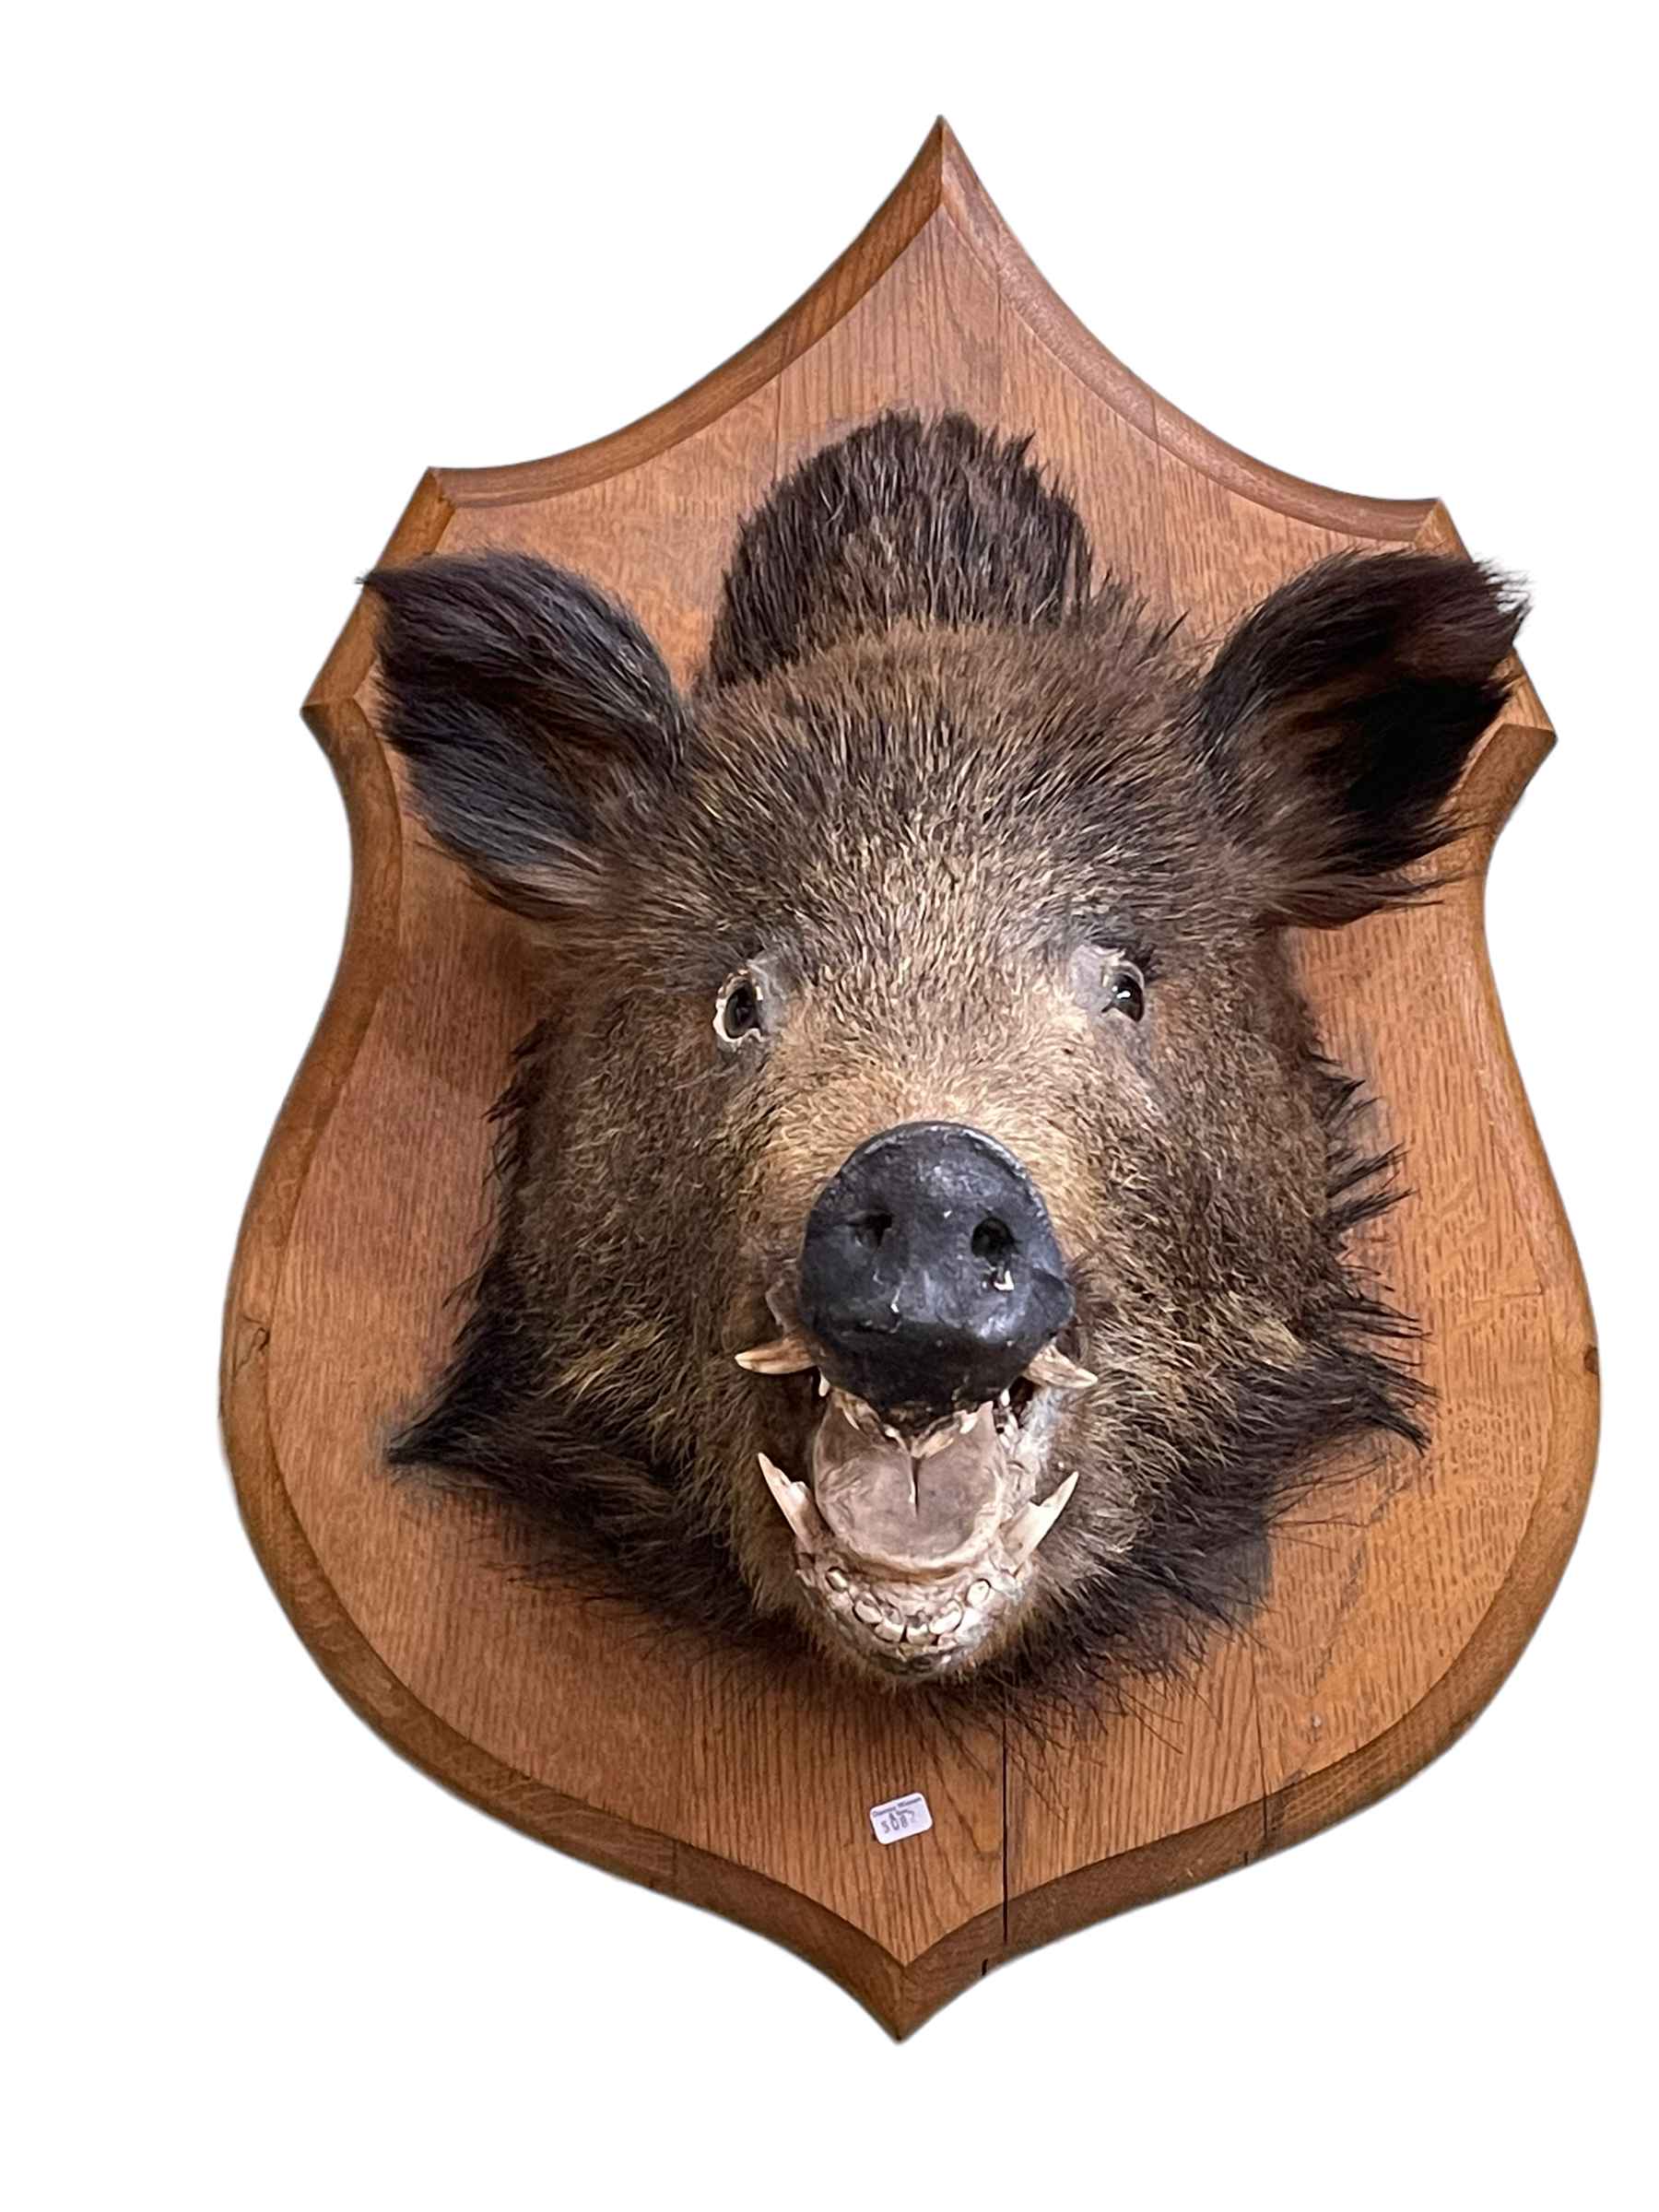 Boars head on a shield shaped mount.